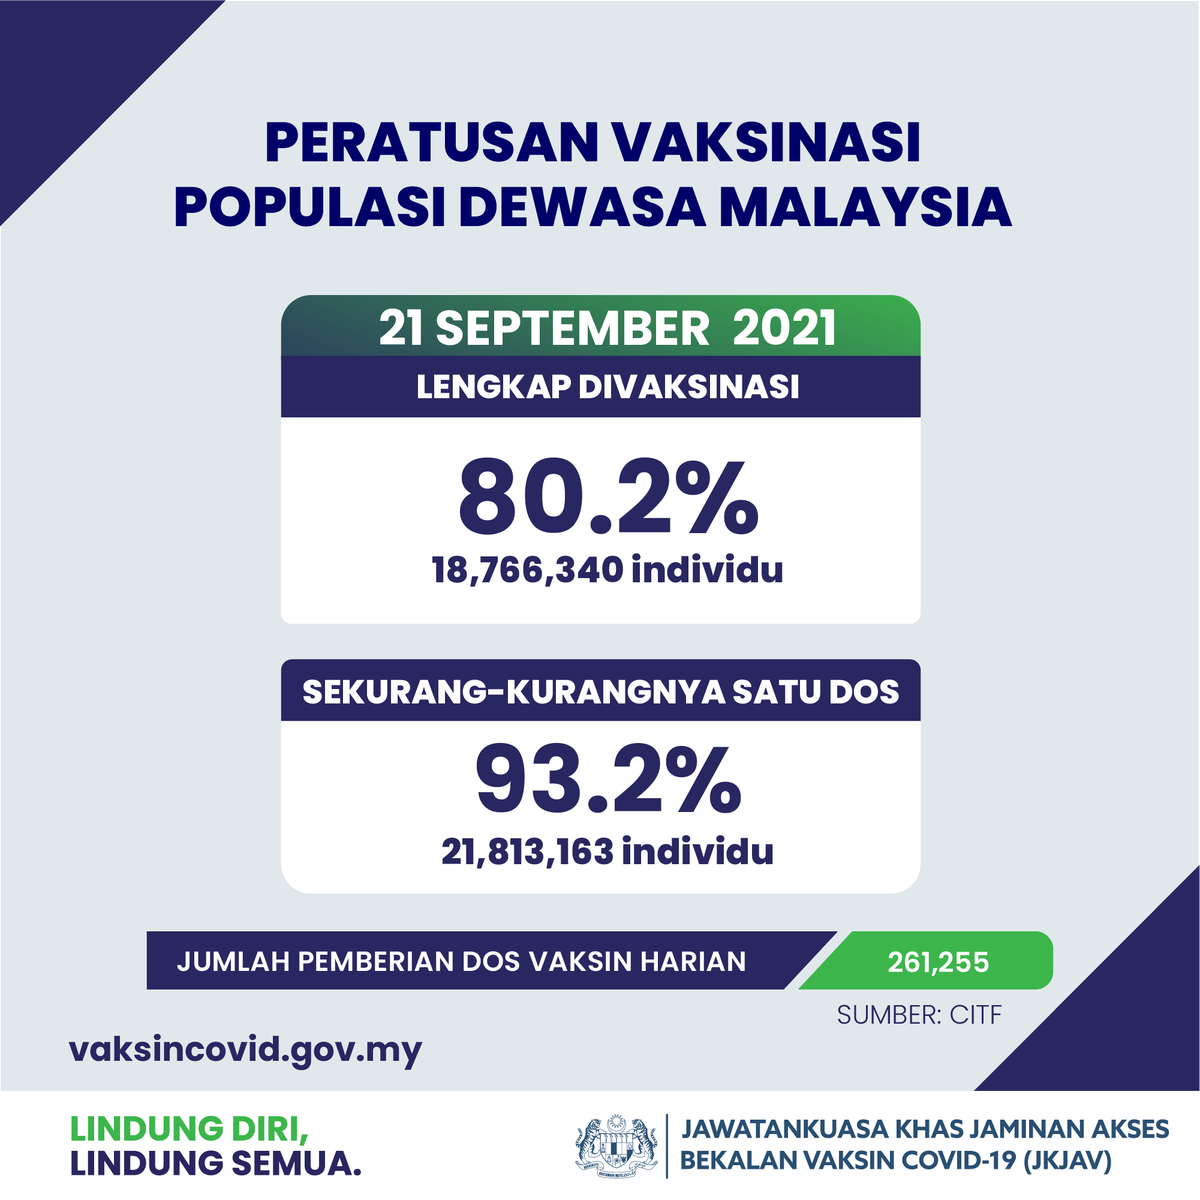 Peratusan vaksin di malaysia terkini